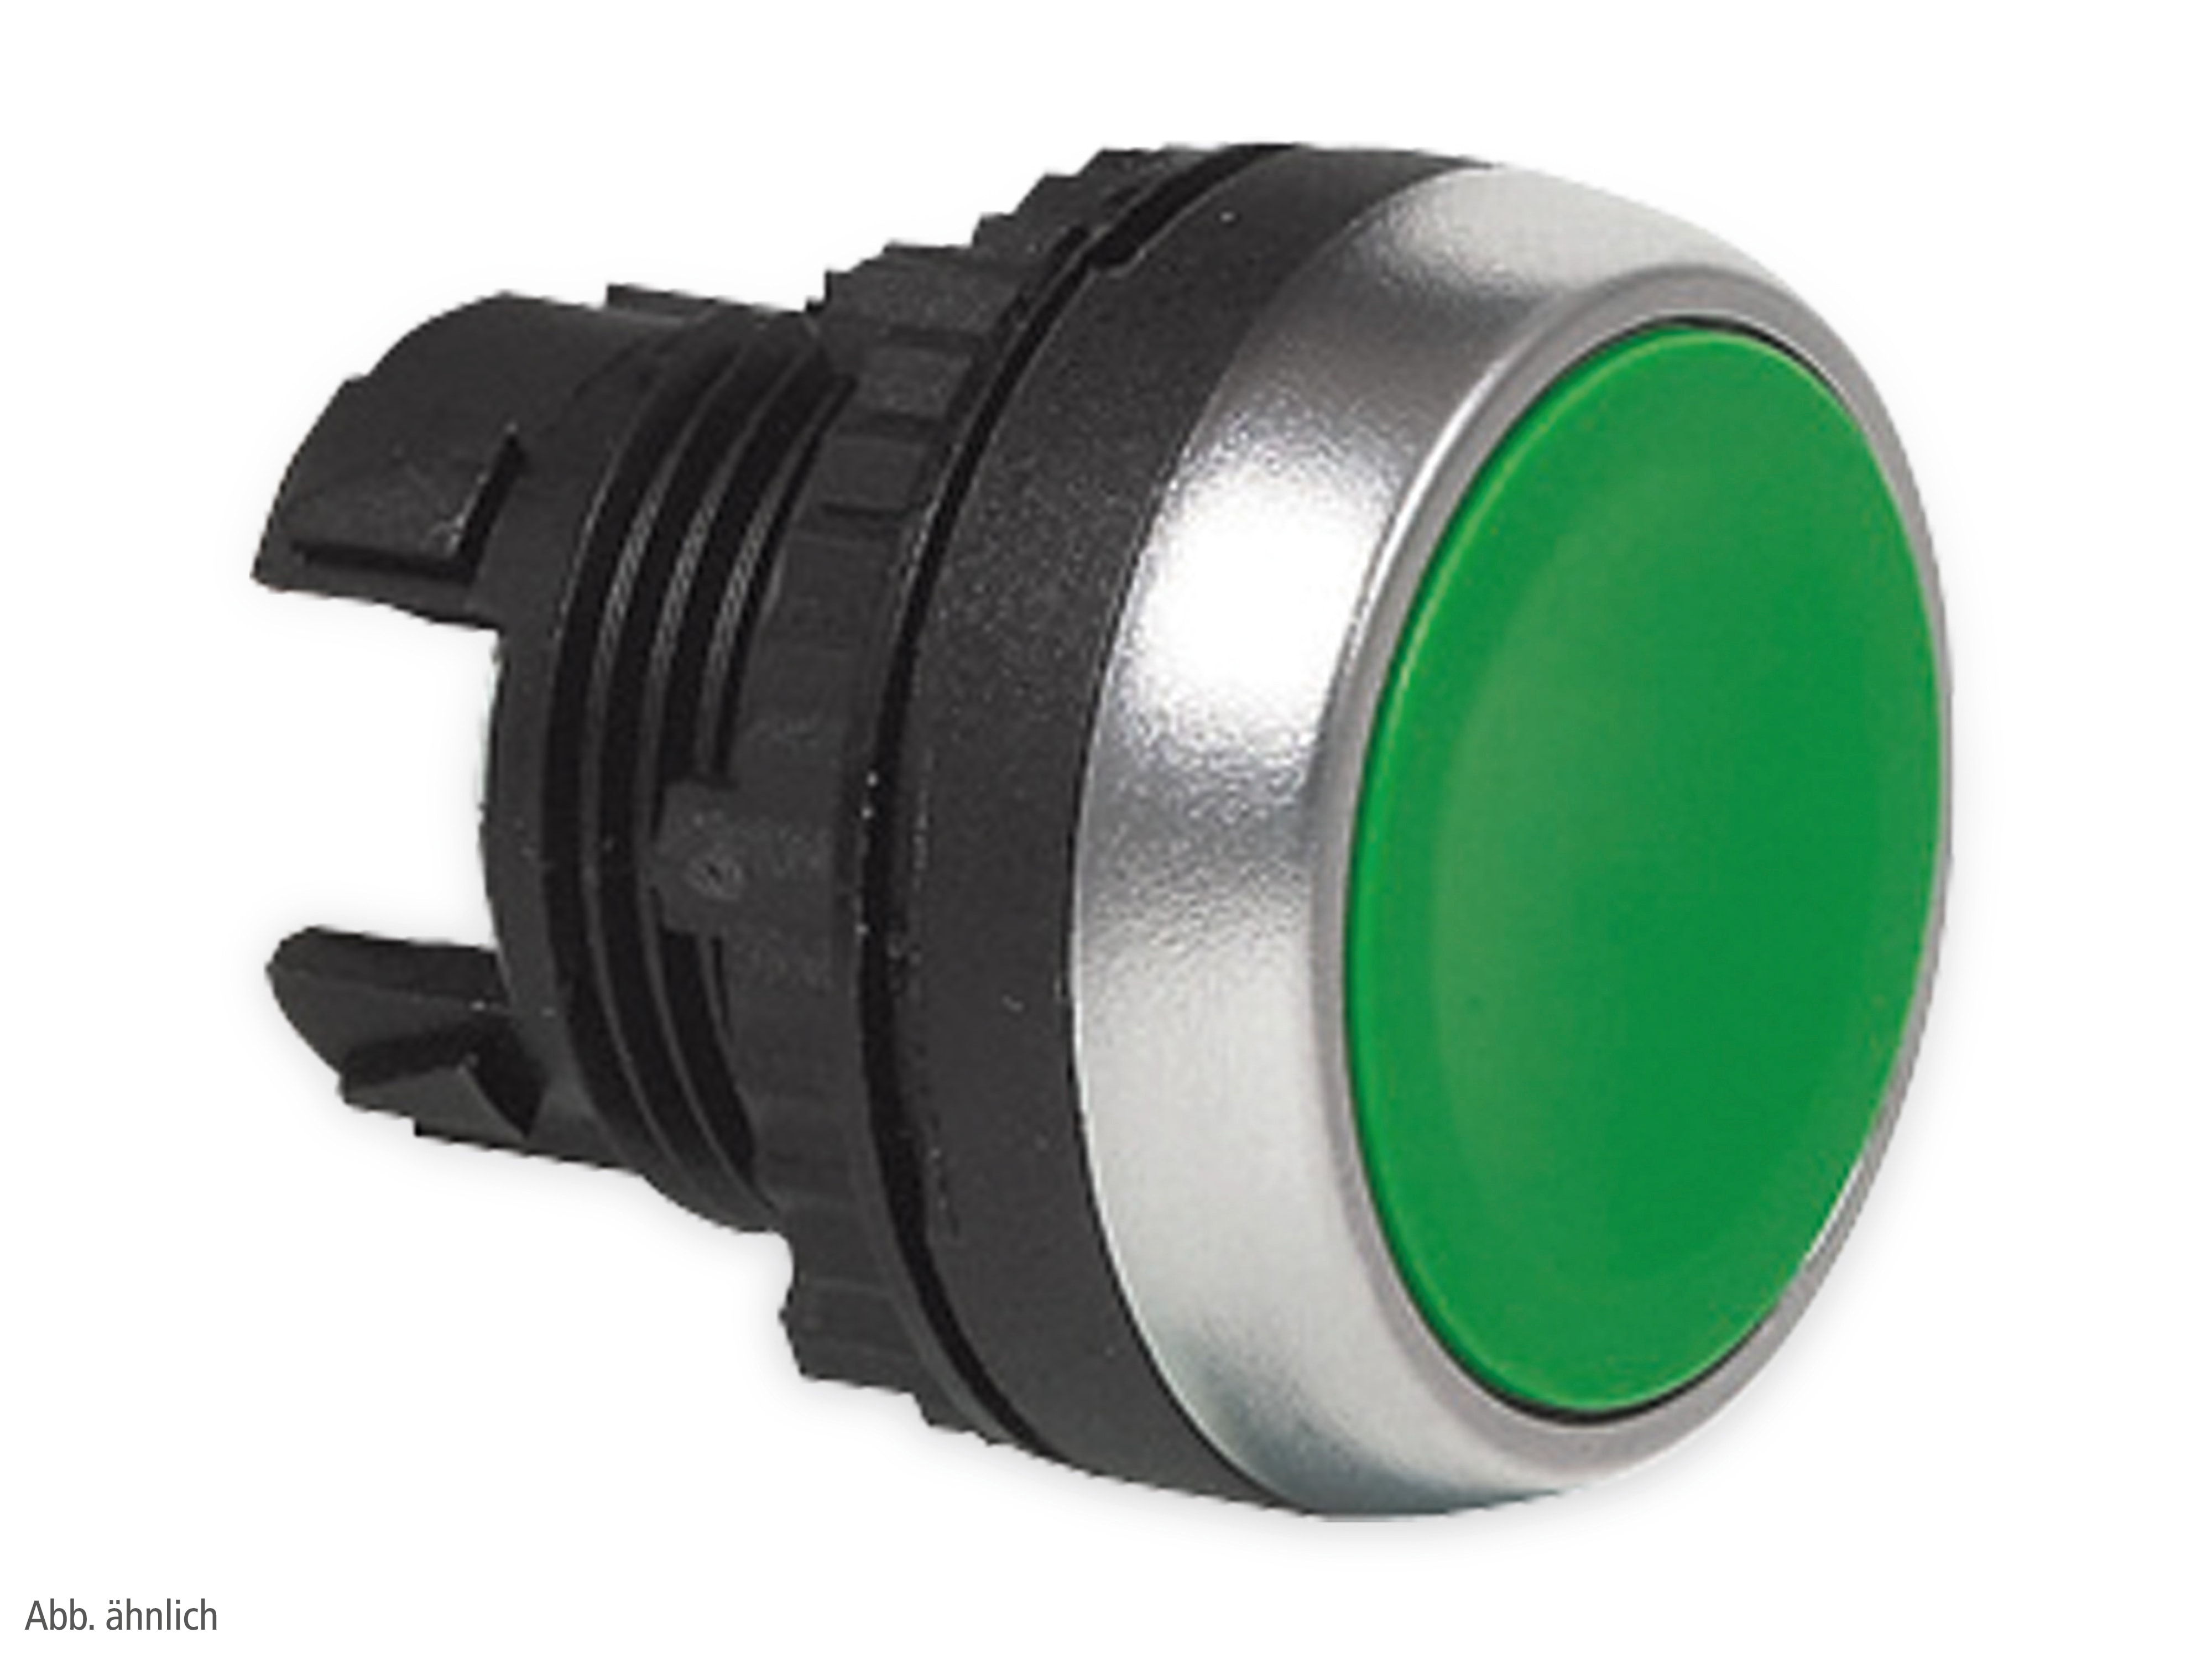 BACO Befehls- und Meldegeräte, L21AA82, Drucktaster flach, unbeleuchtbar, Beschriftung 1, grün, 22mm